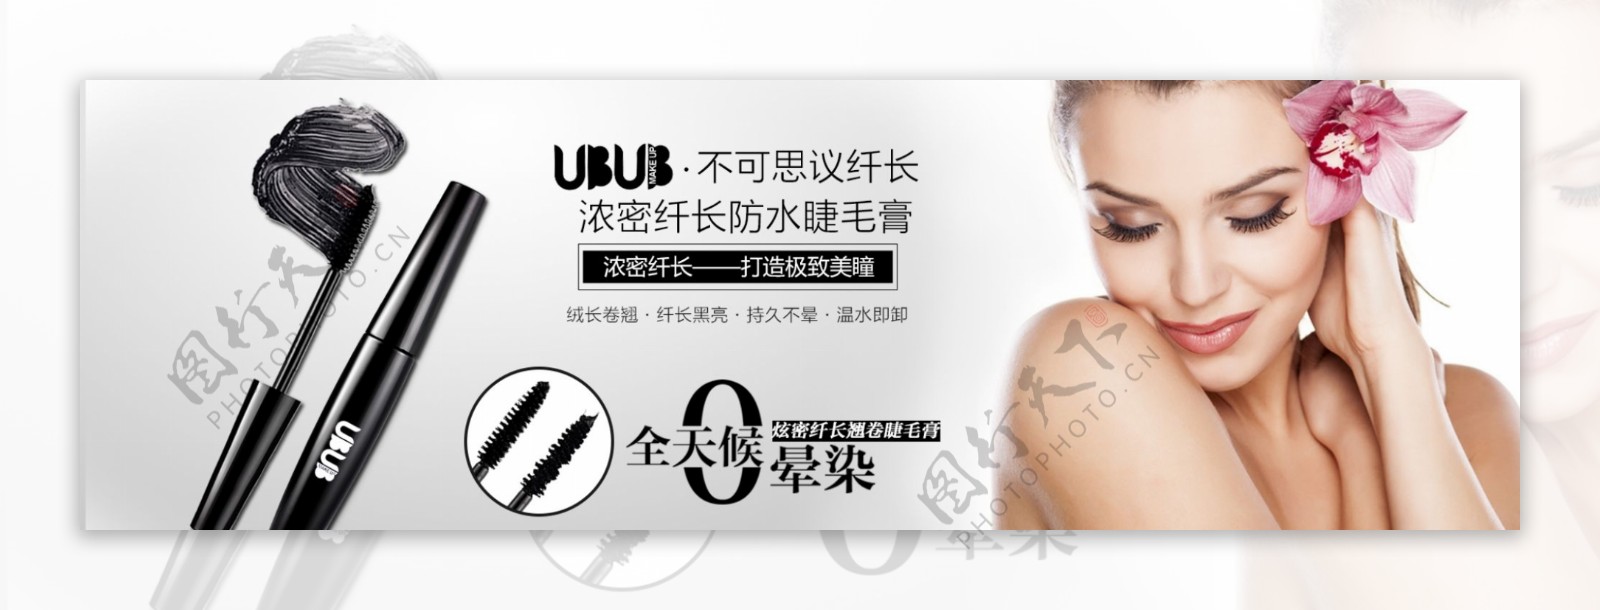 彩妆系列ubub睫毛膏海报轮播psd图片